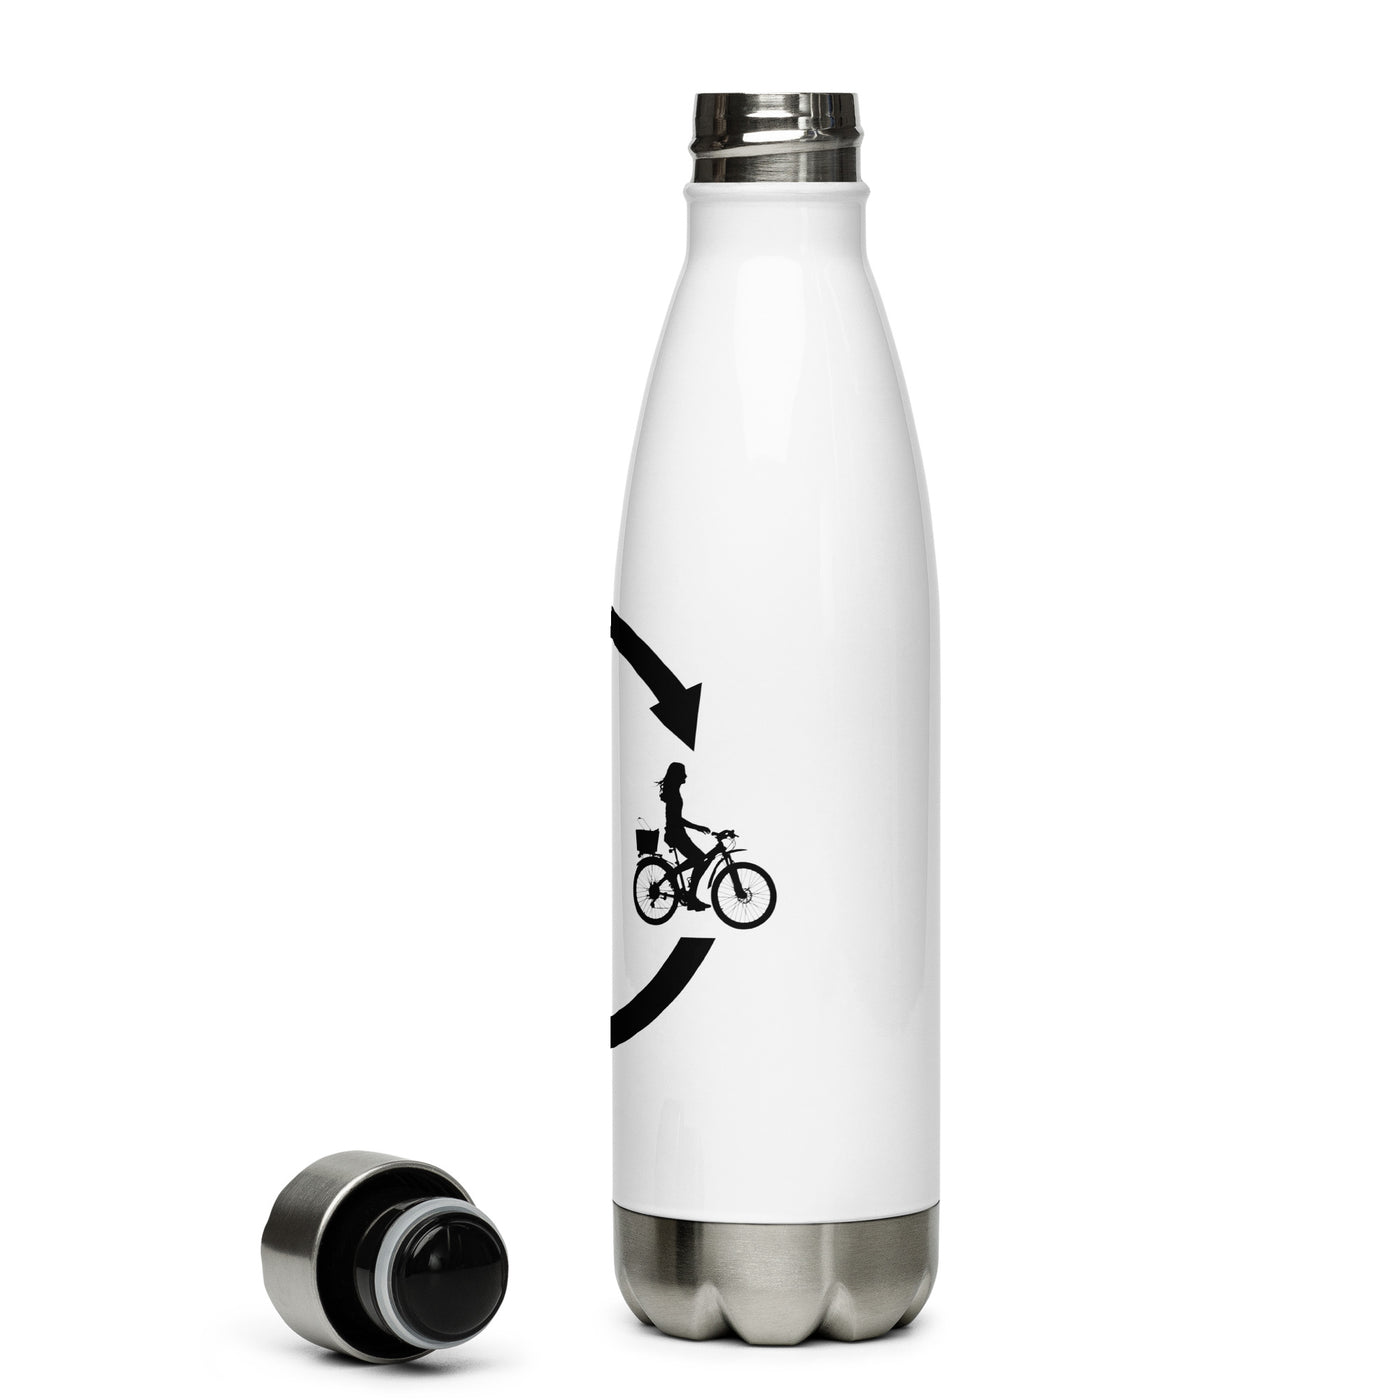 Kaffee, Ladepfeile Und Radfahren 2 - Edelstahl Trinkflasche fahrrad